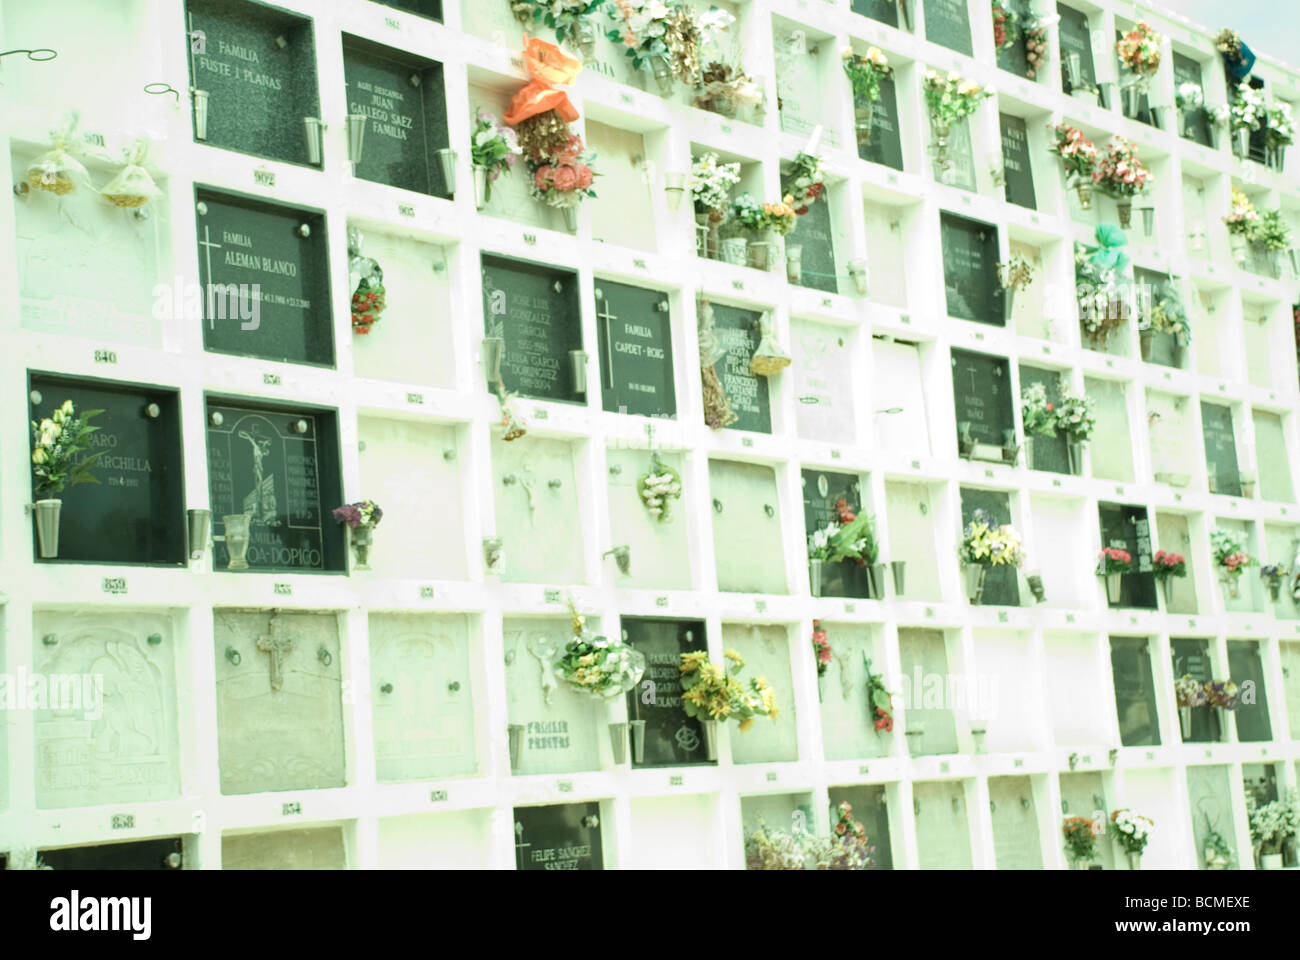 Friedhof von Sitges, Barcelona - Spanien Stockfoto